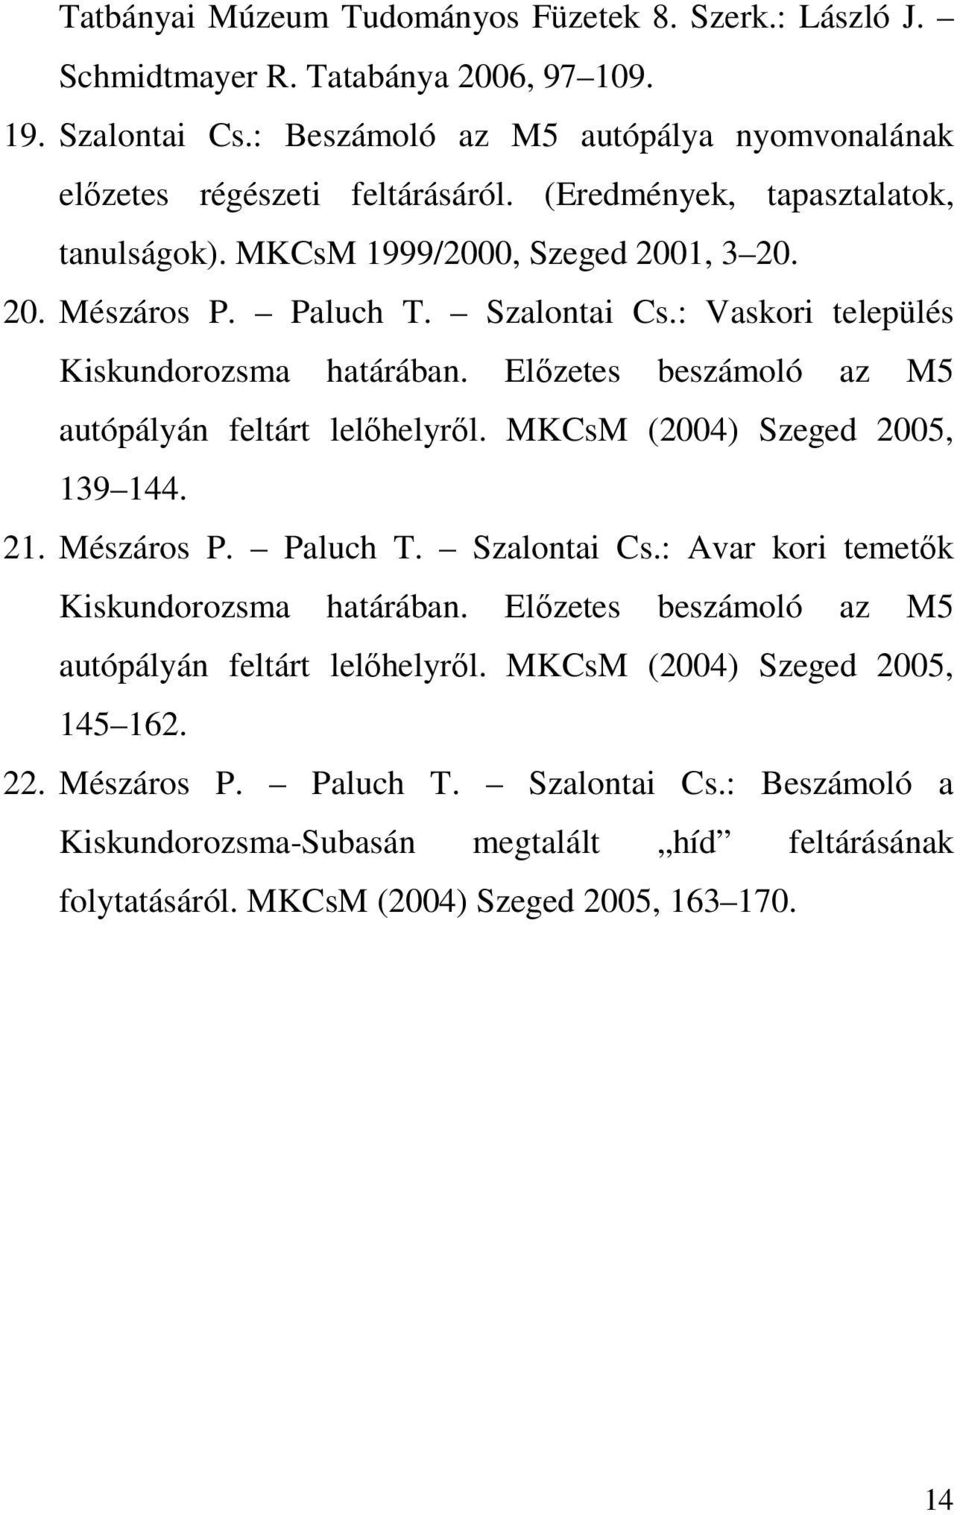 Előzetes beszámoló az M5 autópályán feltárt lelőhelyről. MKCsM (2004) Szeged 2005, 139 144. 21. Mészáros P. Paluch T. Szalontai Cs.: Avar kori temetők Kiskundorozsma határában.